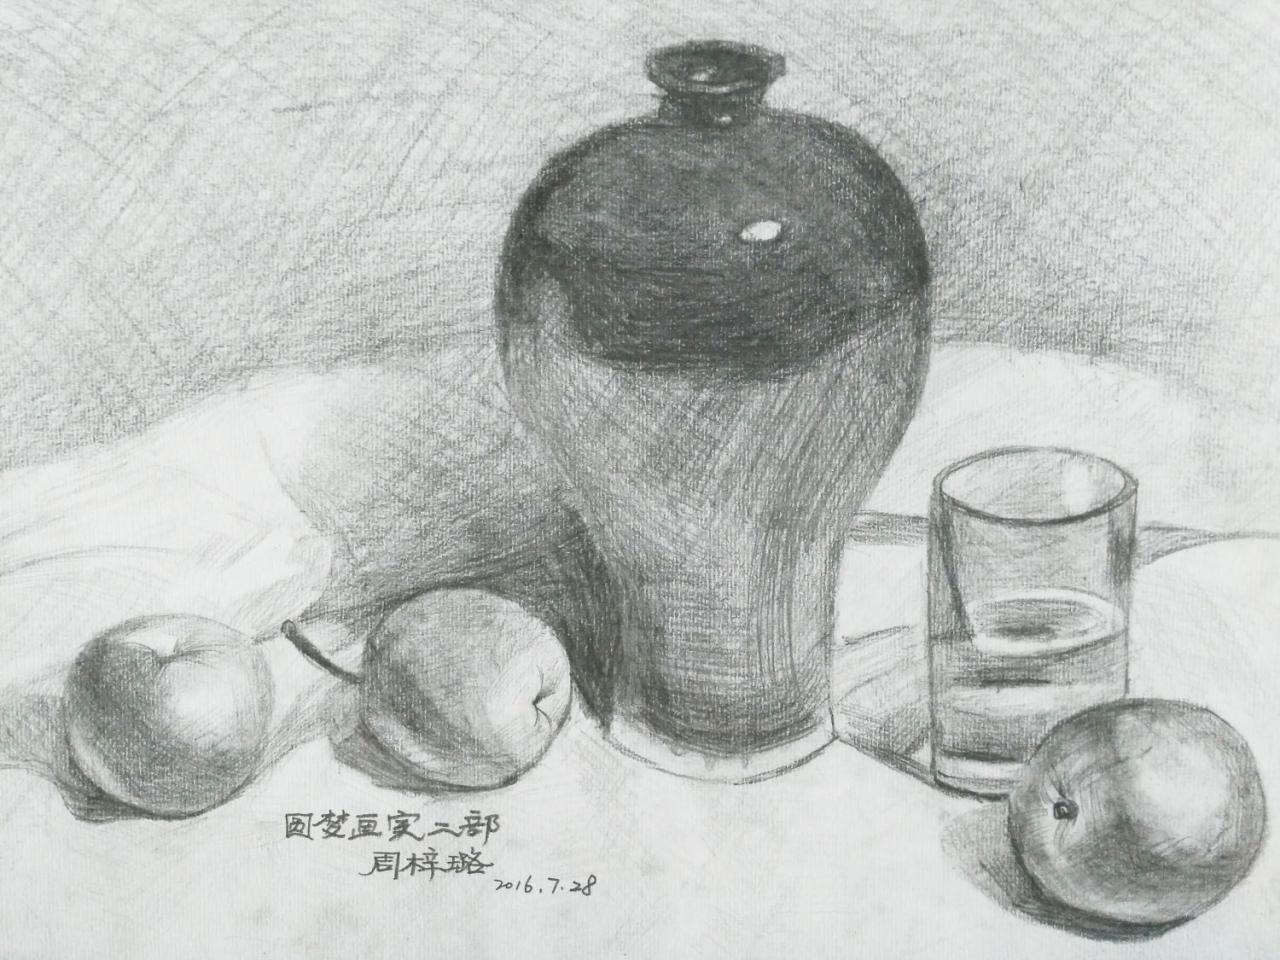 陶罐、玻璃杯、梨、苹果 周梓路画